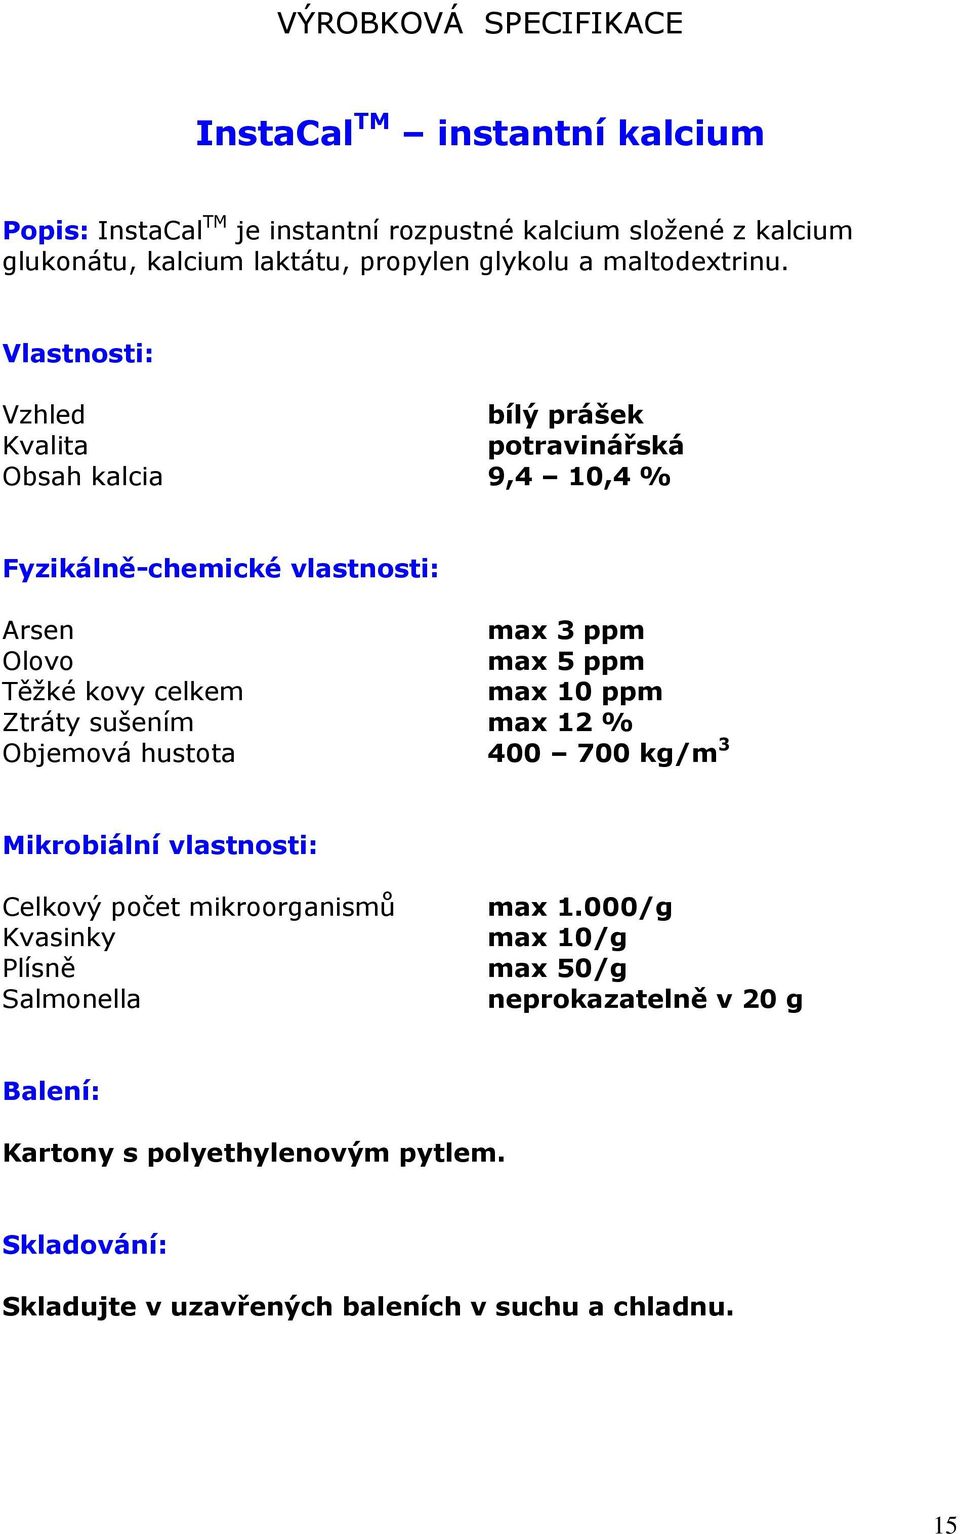 Vlastnosti: Vzhled bílý prášek Kvalita potravinářská Obsah kalcia 9,4 10,4 % Fyzikálně-chemické vlastnosti: Arsen max 3 ppm Olovo max 5 ppm Těžké kovy